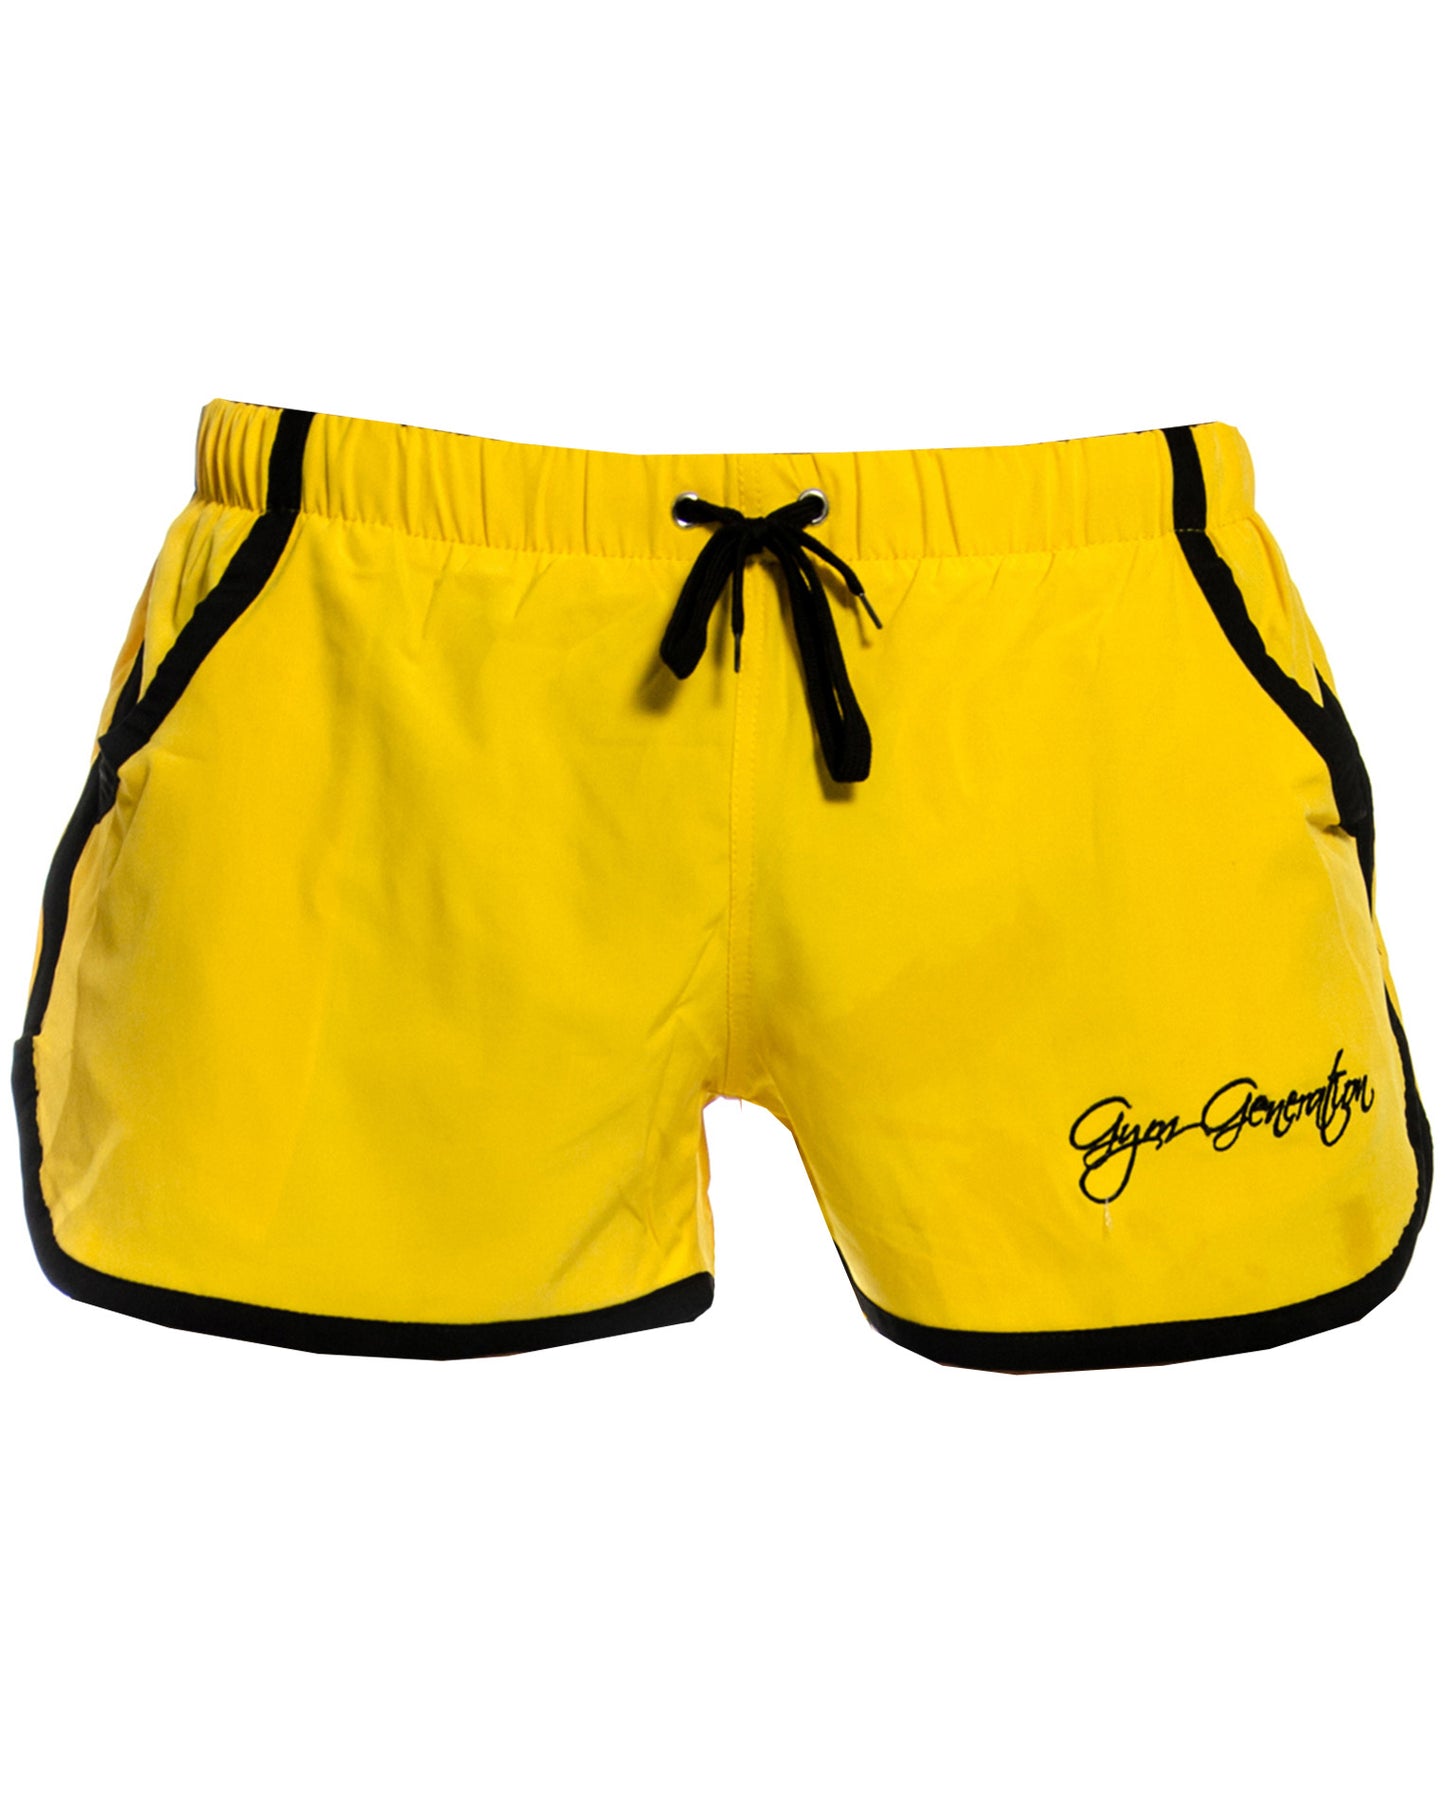 Modische und komfortable gelbe Zyzz Shorts von Gym Generation, ideal für Sportbegeisterte und Modebewusste